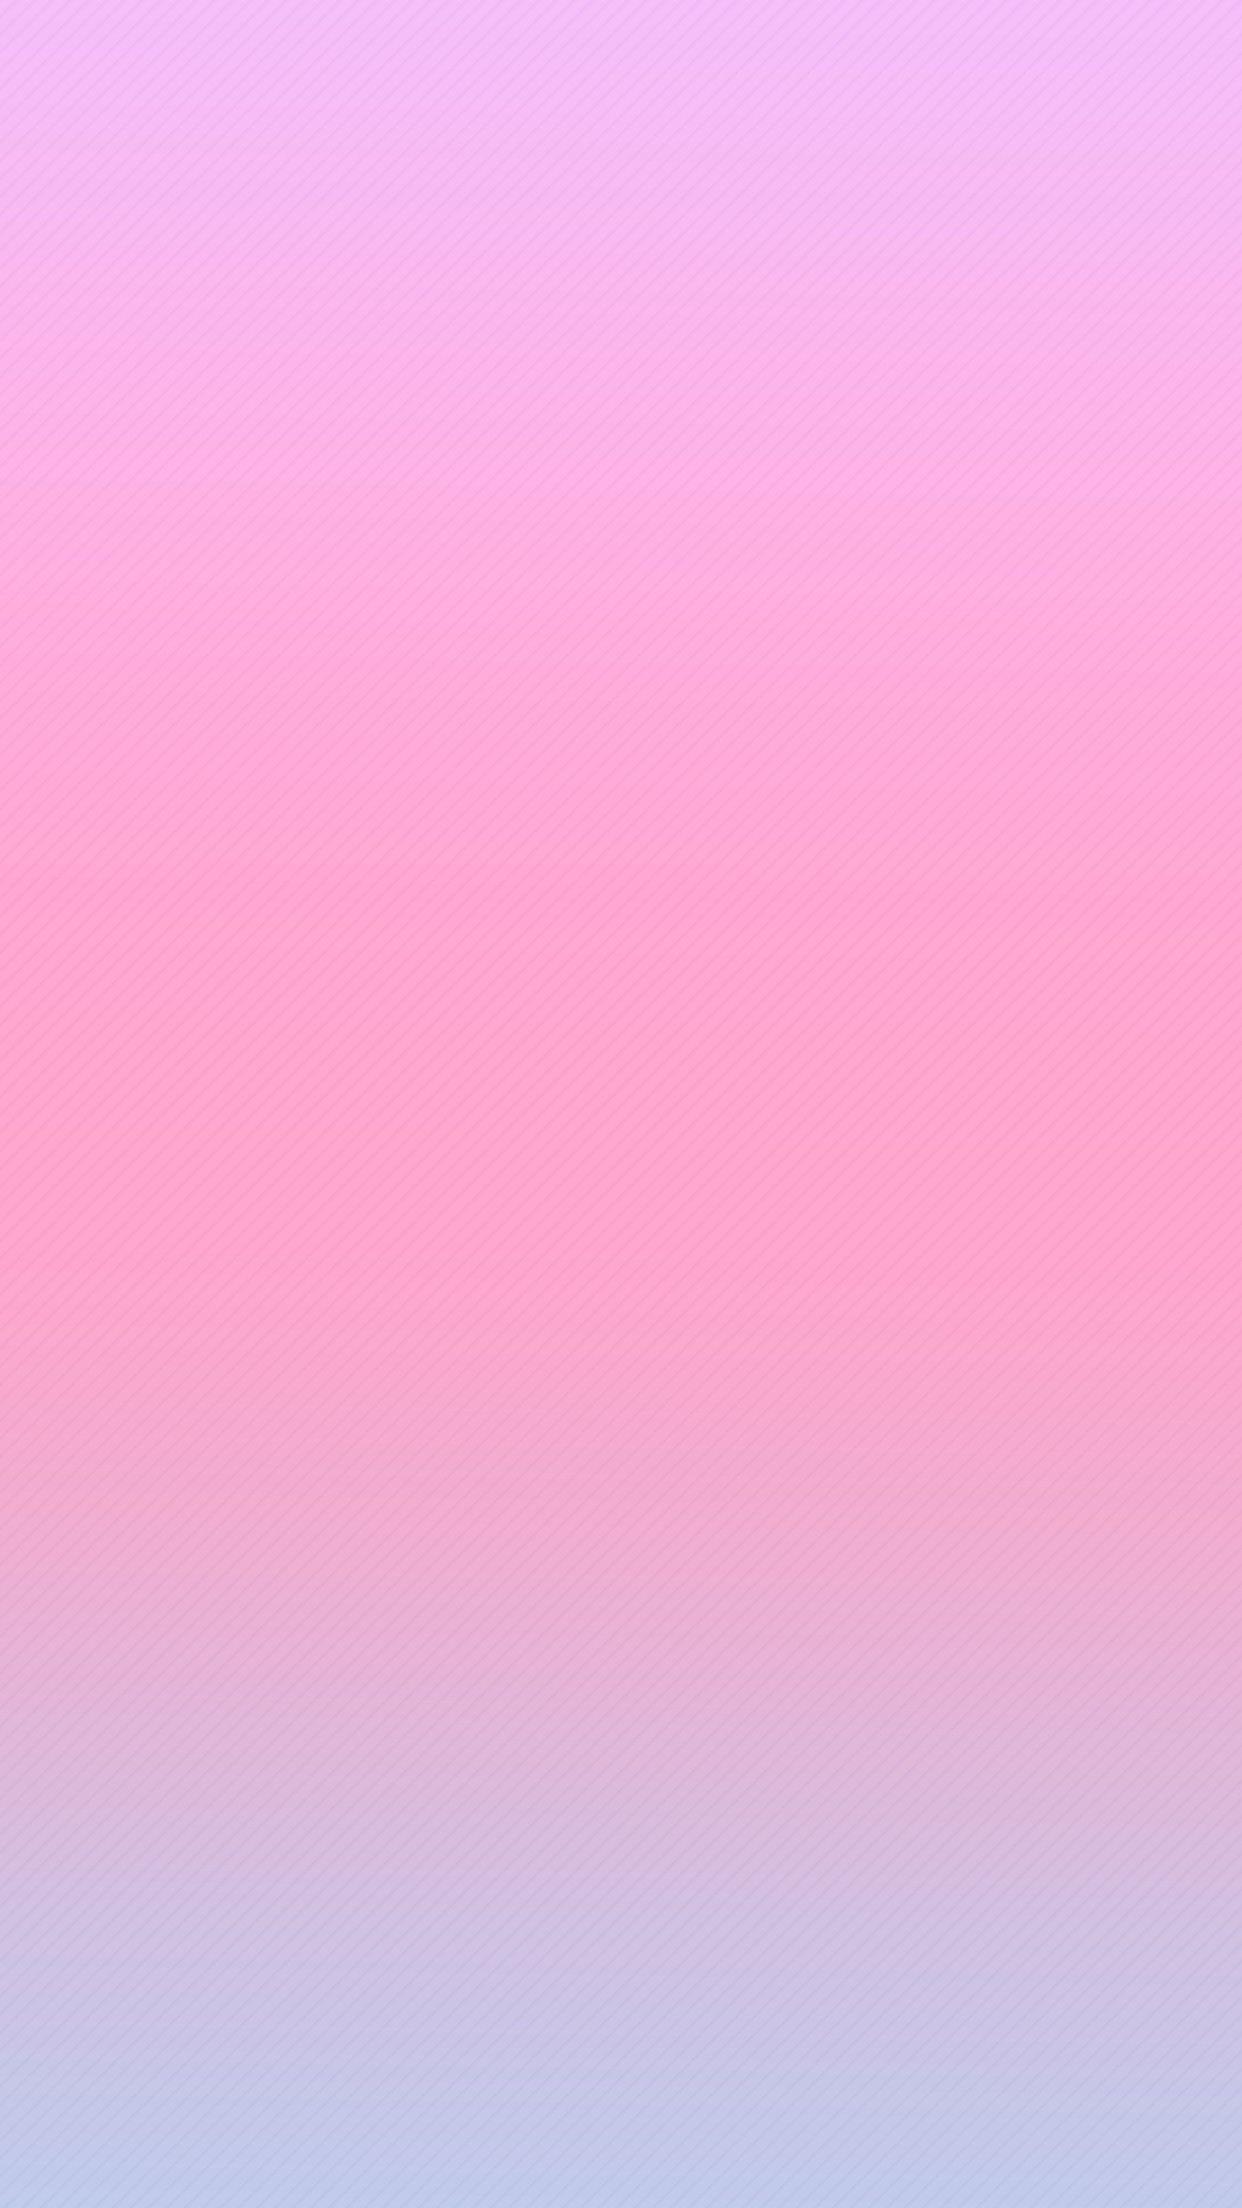 Dark Pink Gradient Wallpapers - Top Free Dark Pink Gradient Backgrounds ...